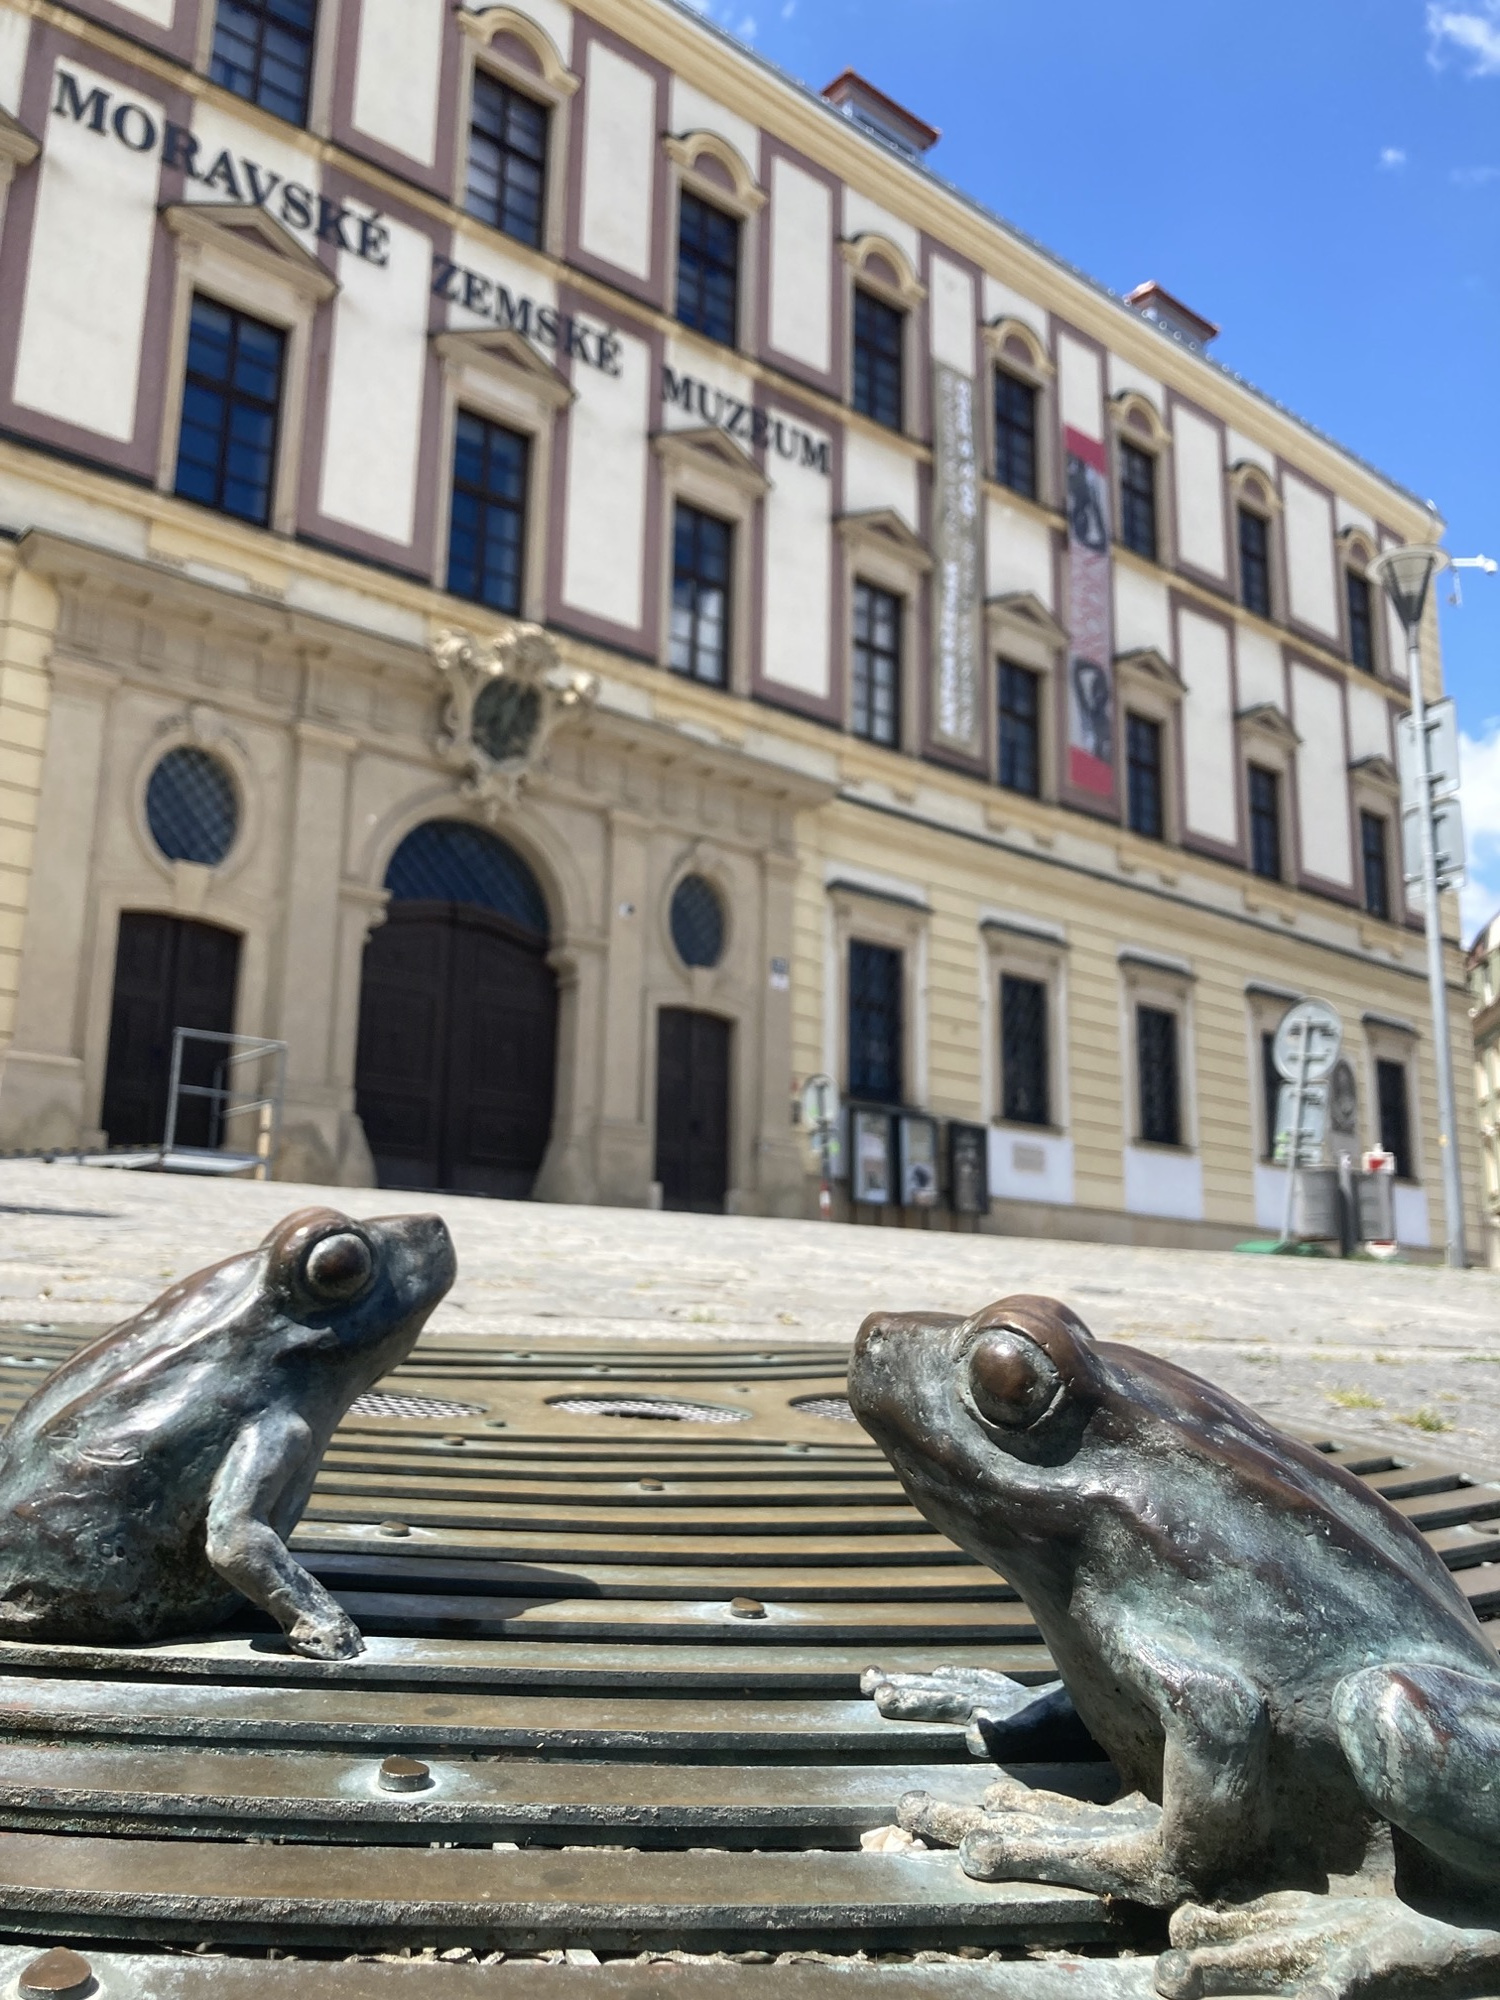 Froschperspektive, im Vordergrund sitzen zwei metallene Frösche auf einem Gitter, dahinter etwas unscharf das Moravské Zemské Muzeum